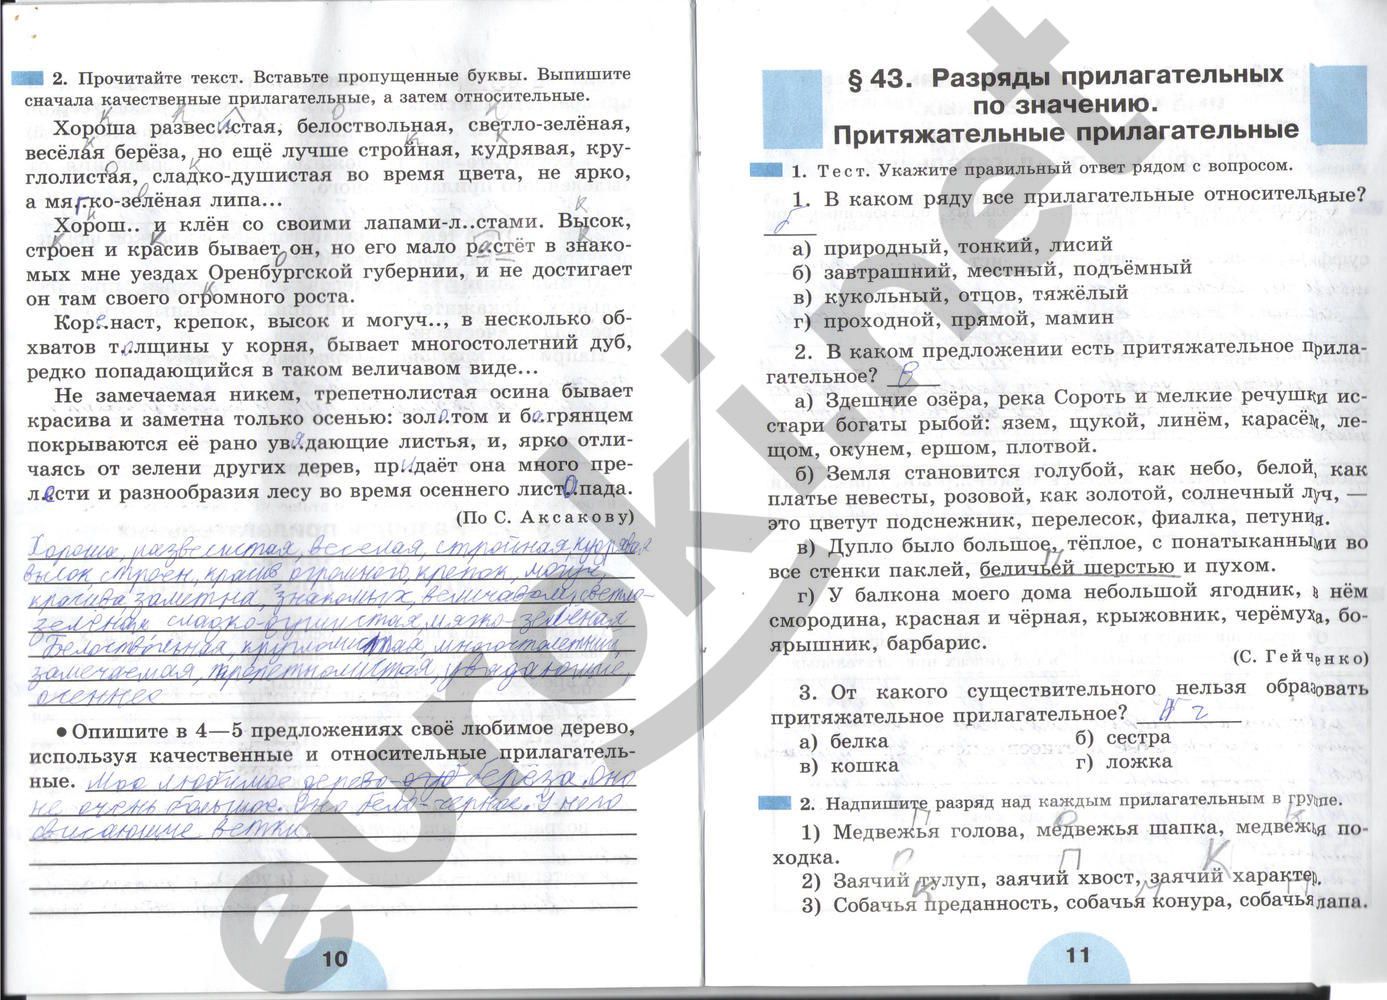 ГДЗ Русский язык 6 класс - стр. 10-11